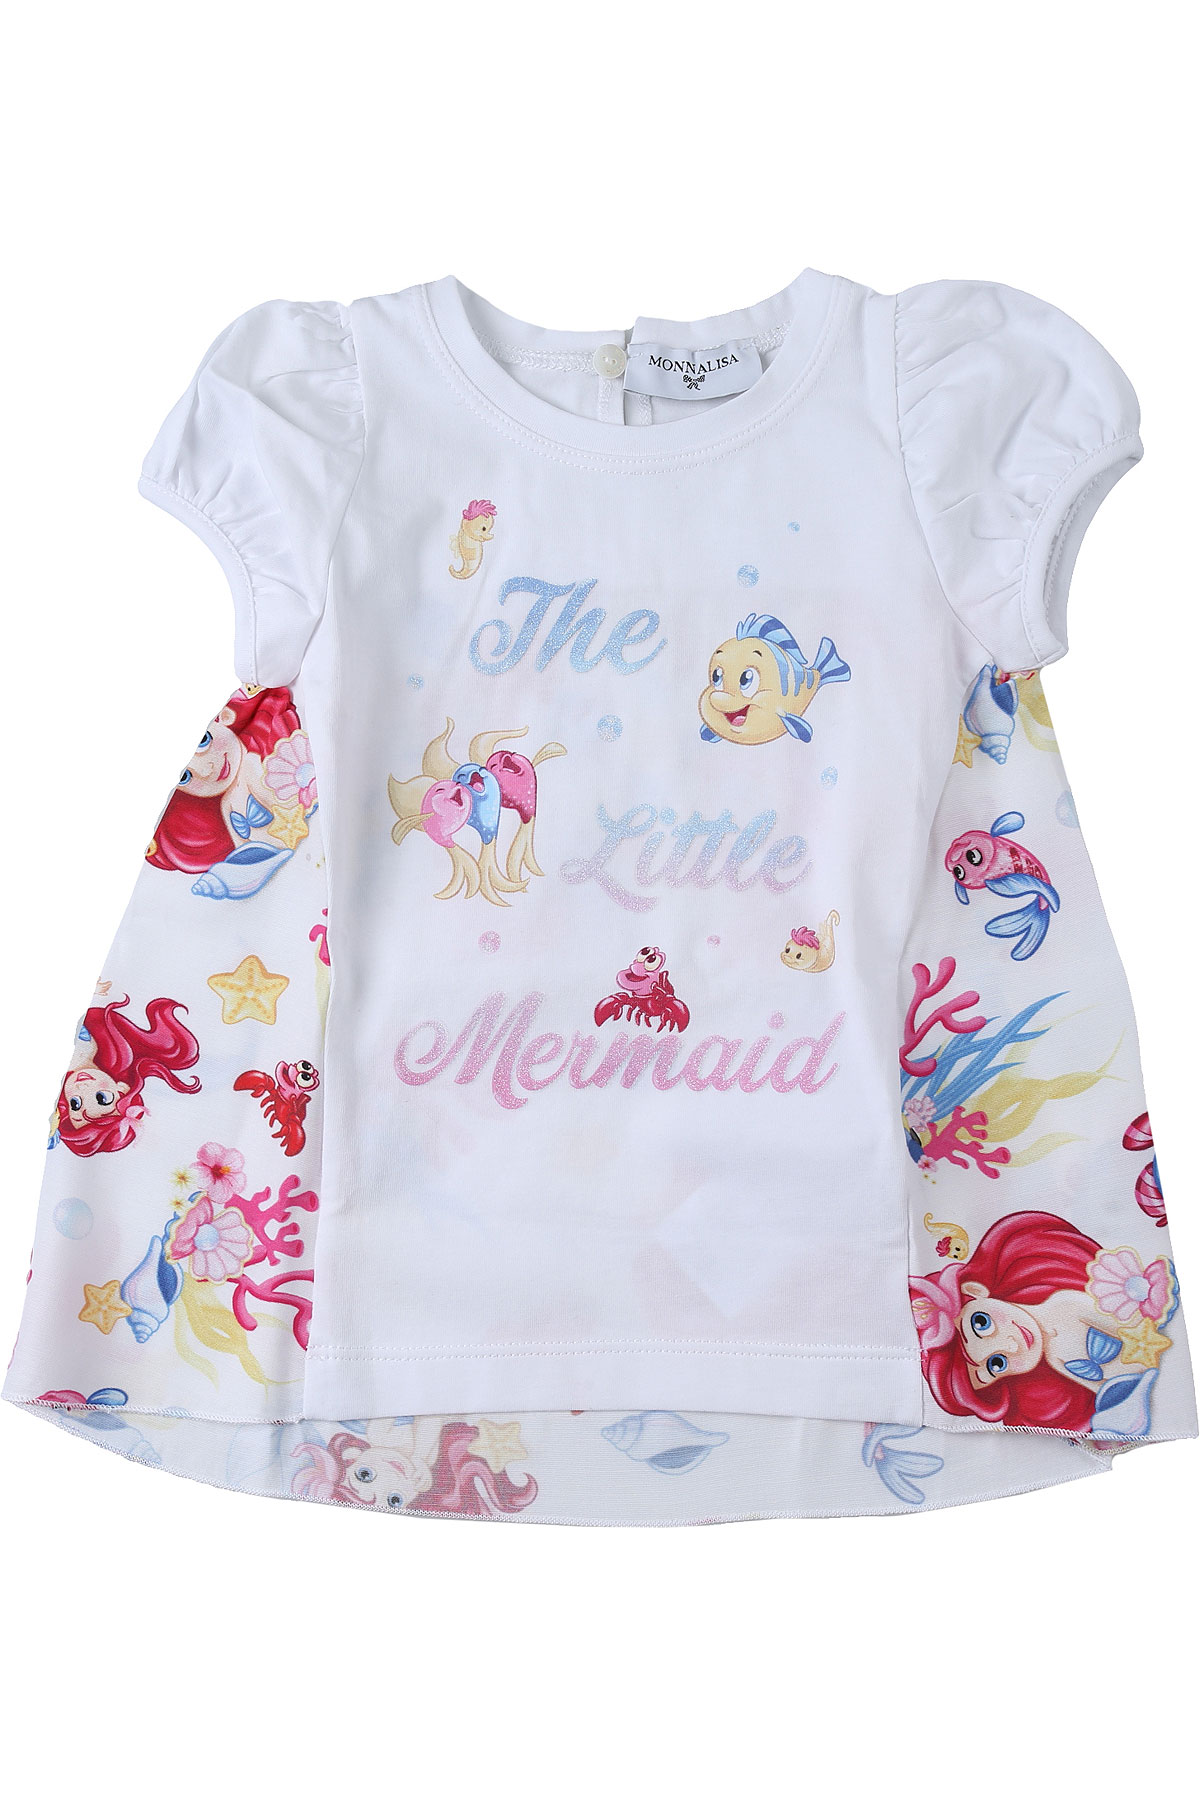 Monnalisa Baby T-Shirt für Mädchen Günstig im Outlet Sale, Weiss, Baumwolle, 2017, 12M 18M 6M 9M